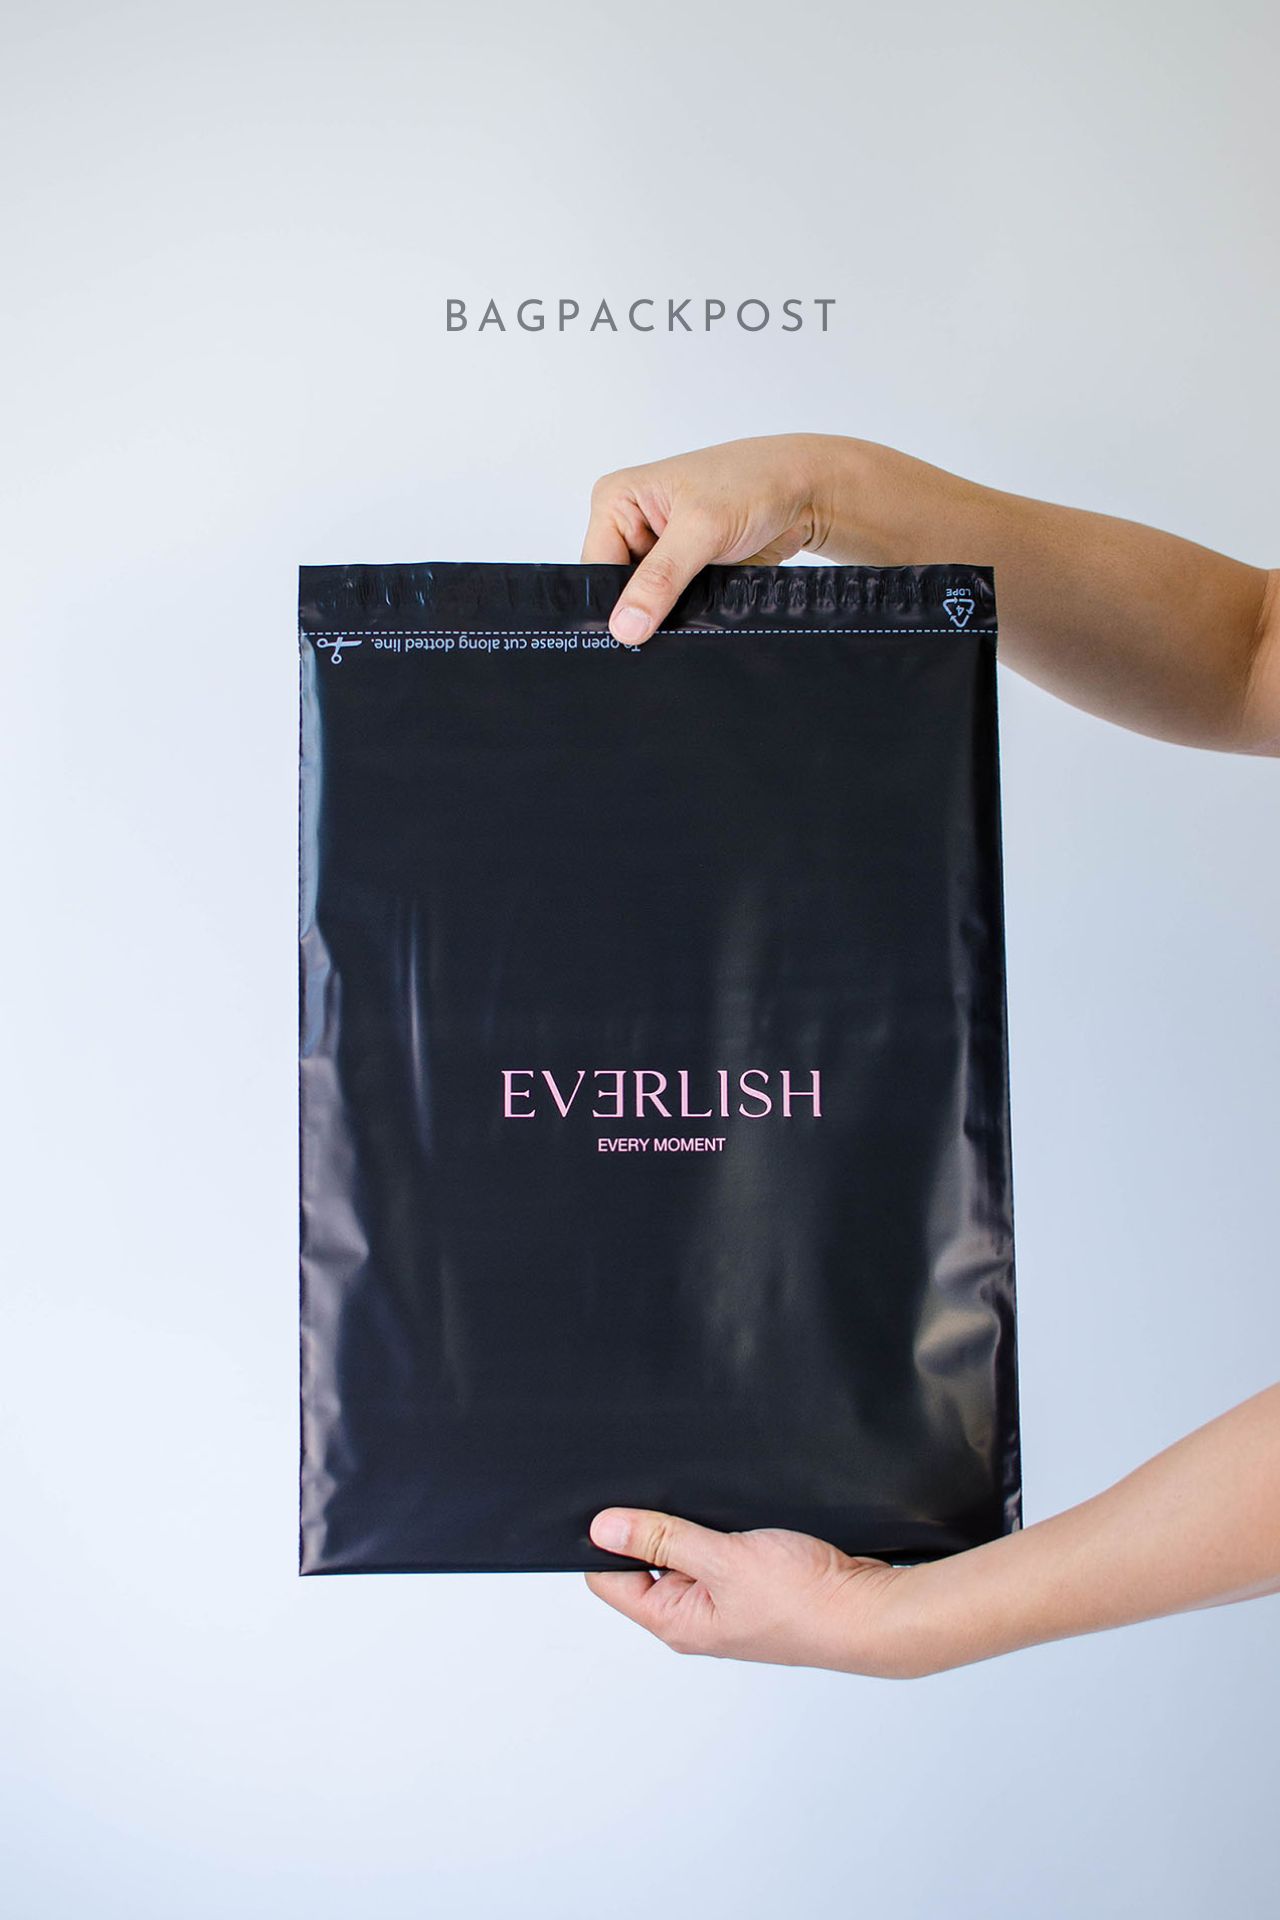 ผลิตถุงไปรษณีย์ ซองไปรษณีย์พิมพ์ลาย EVERLISH ซองไปรษณีย์สีดำ ถุงไปรษณีย์พิมพ์ลาย 1 BagPackPost